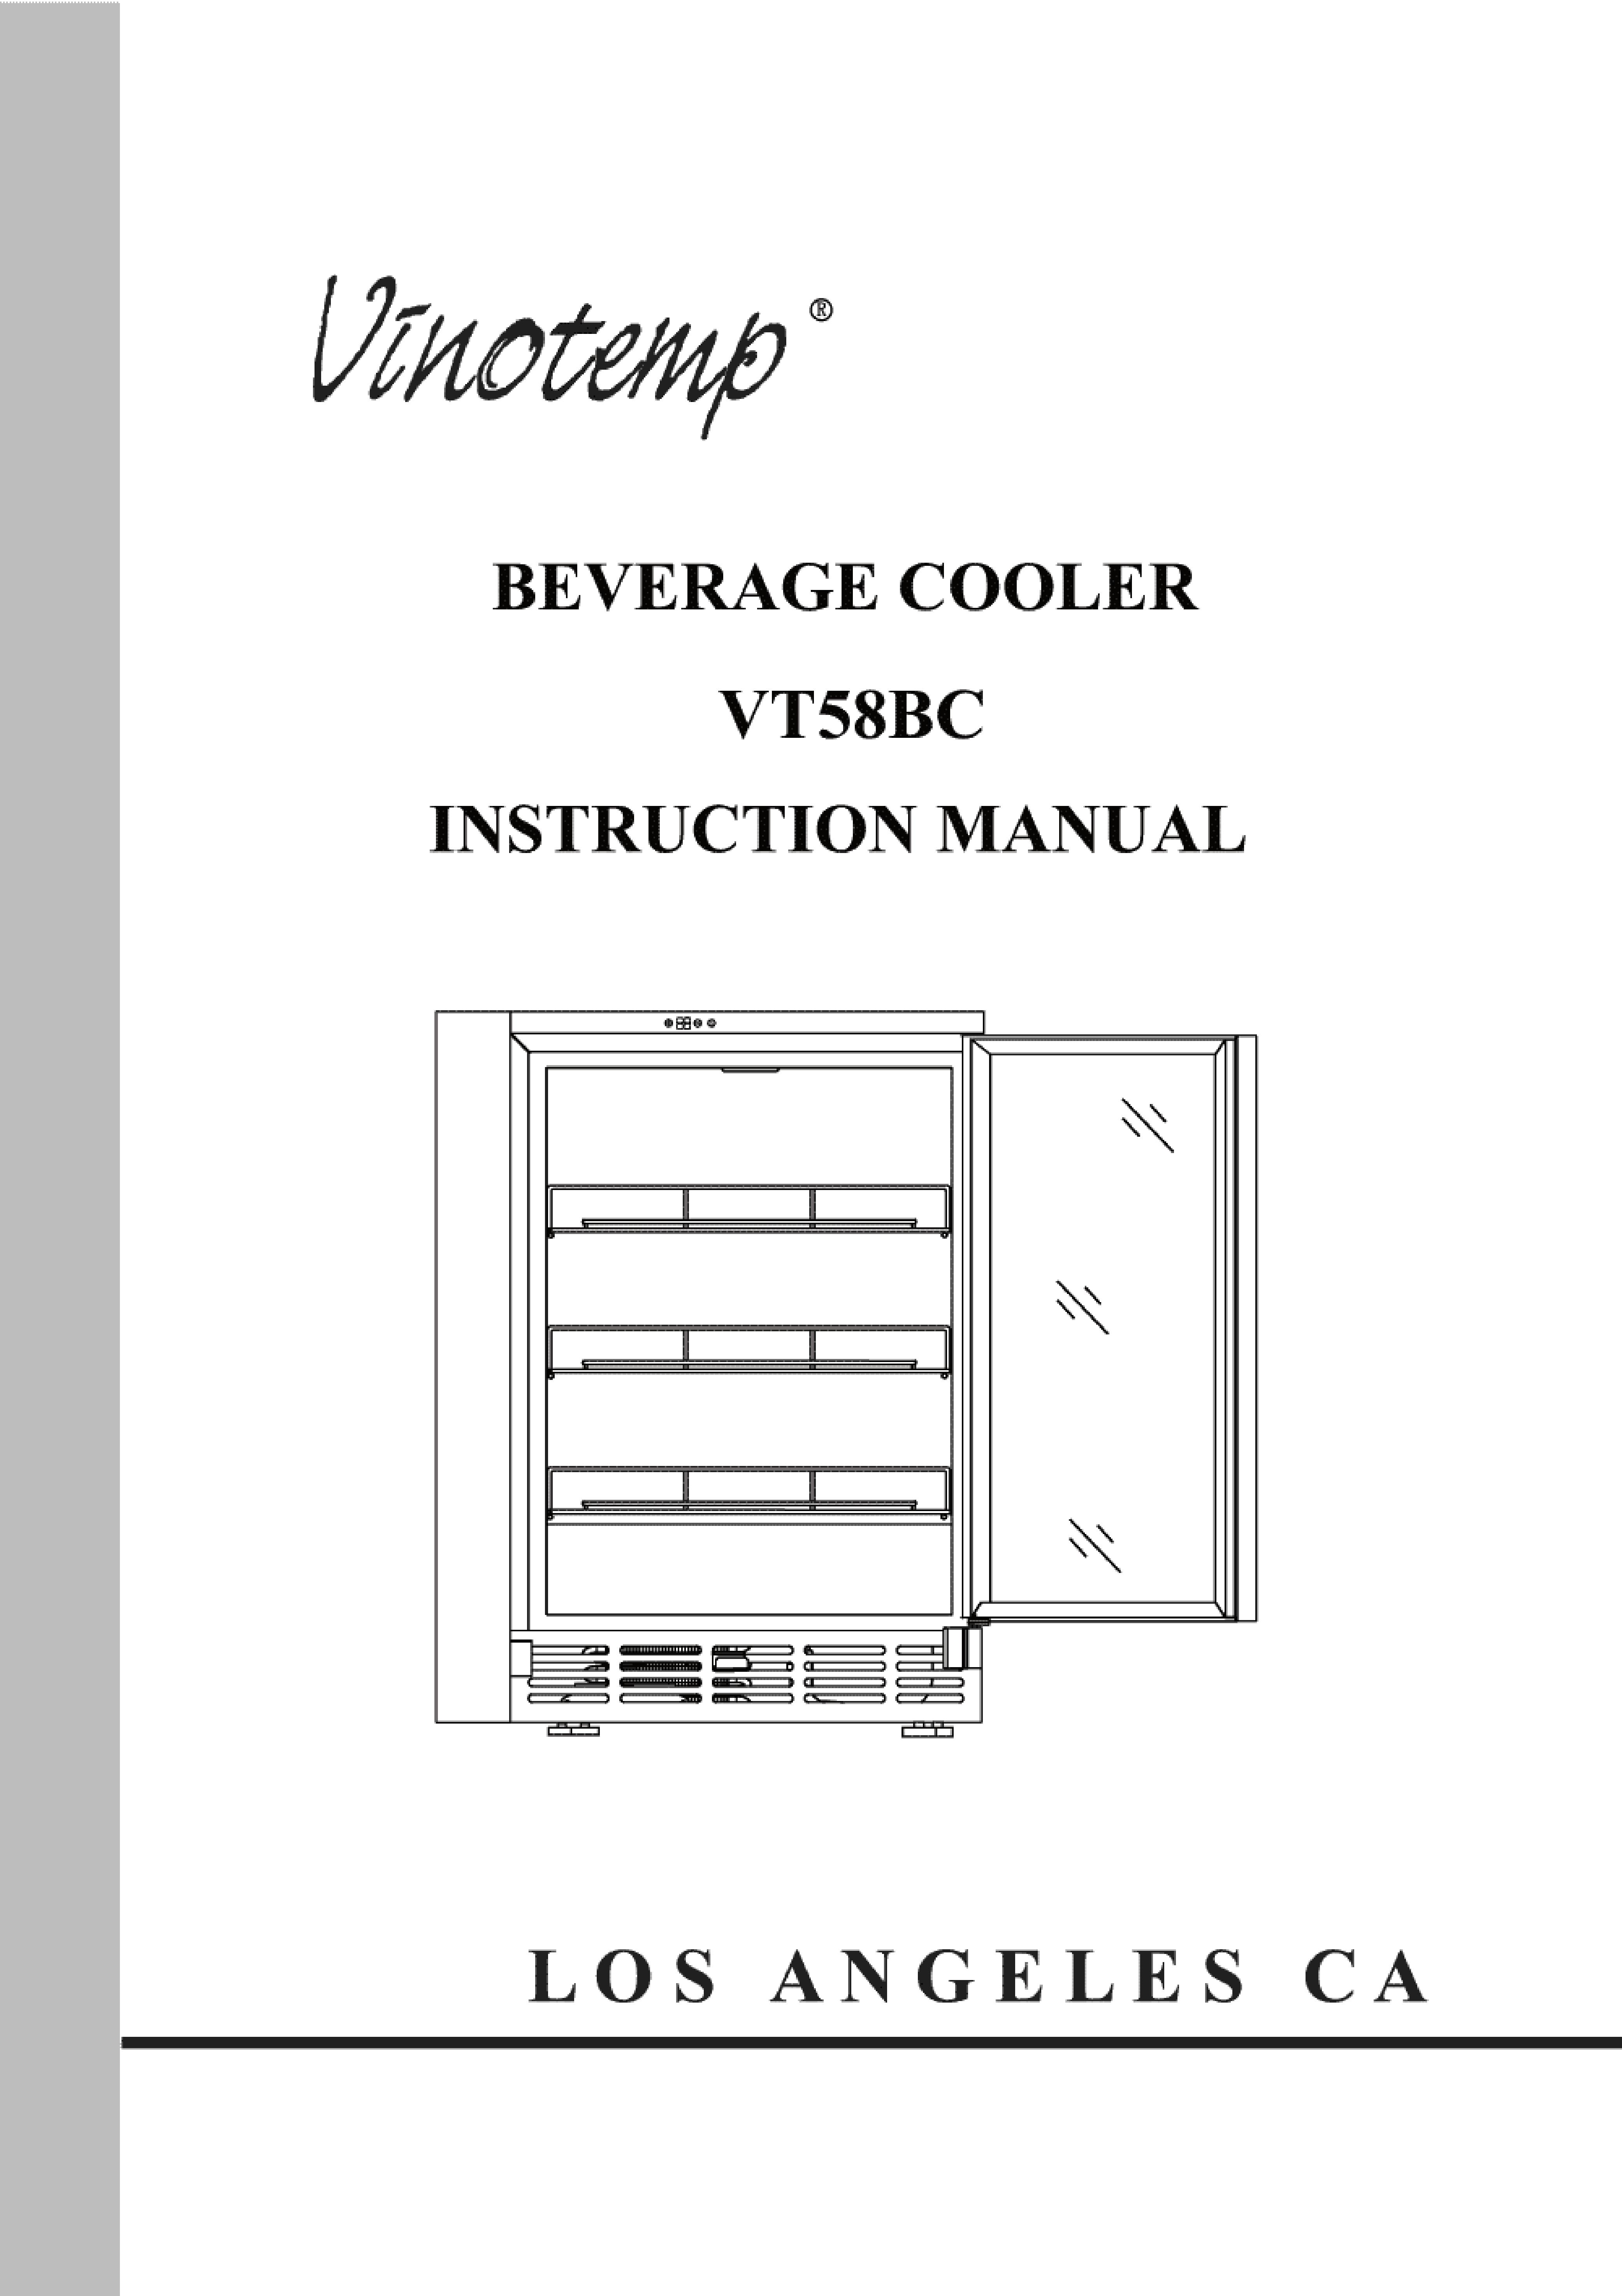 Vinotemp BC-58 Refrigerator User Manual